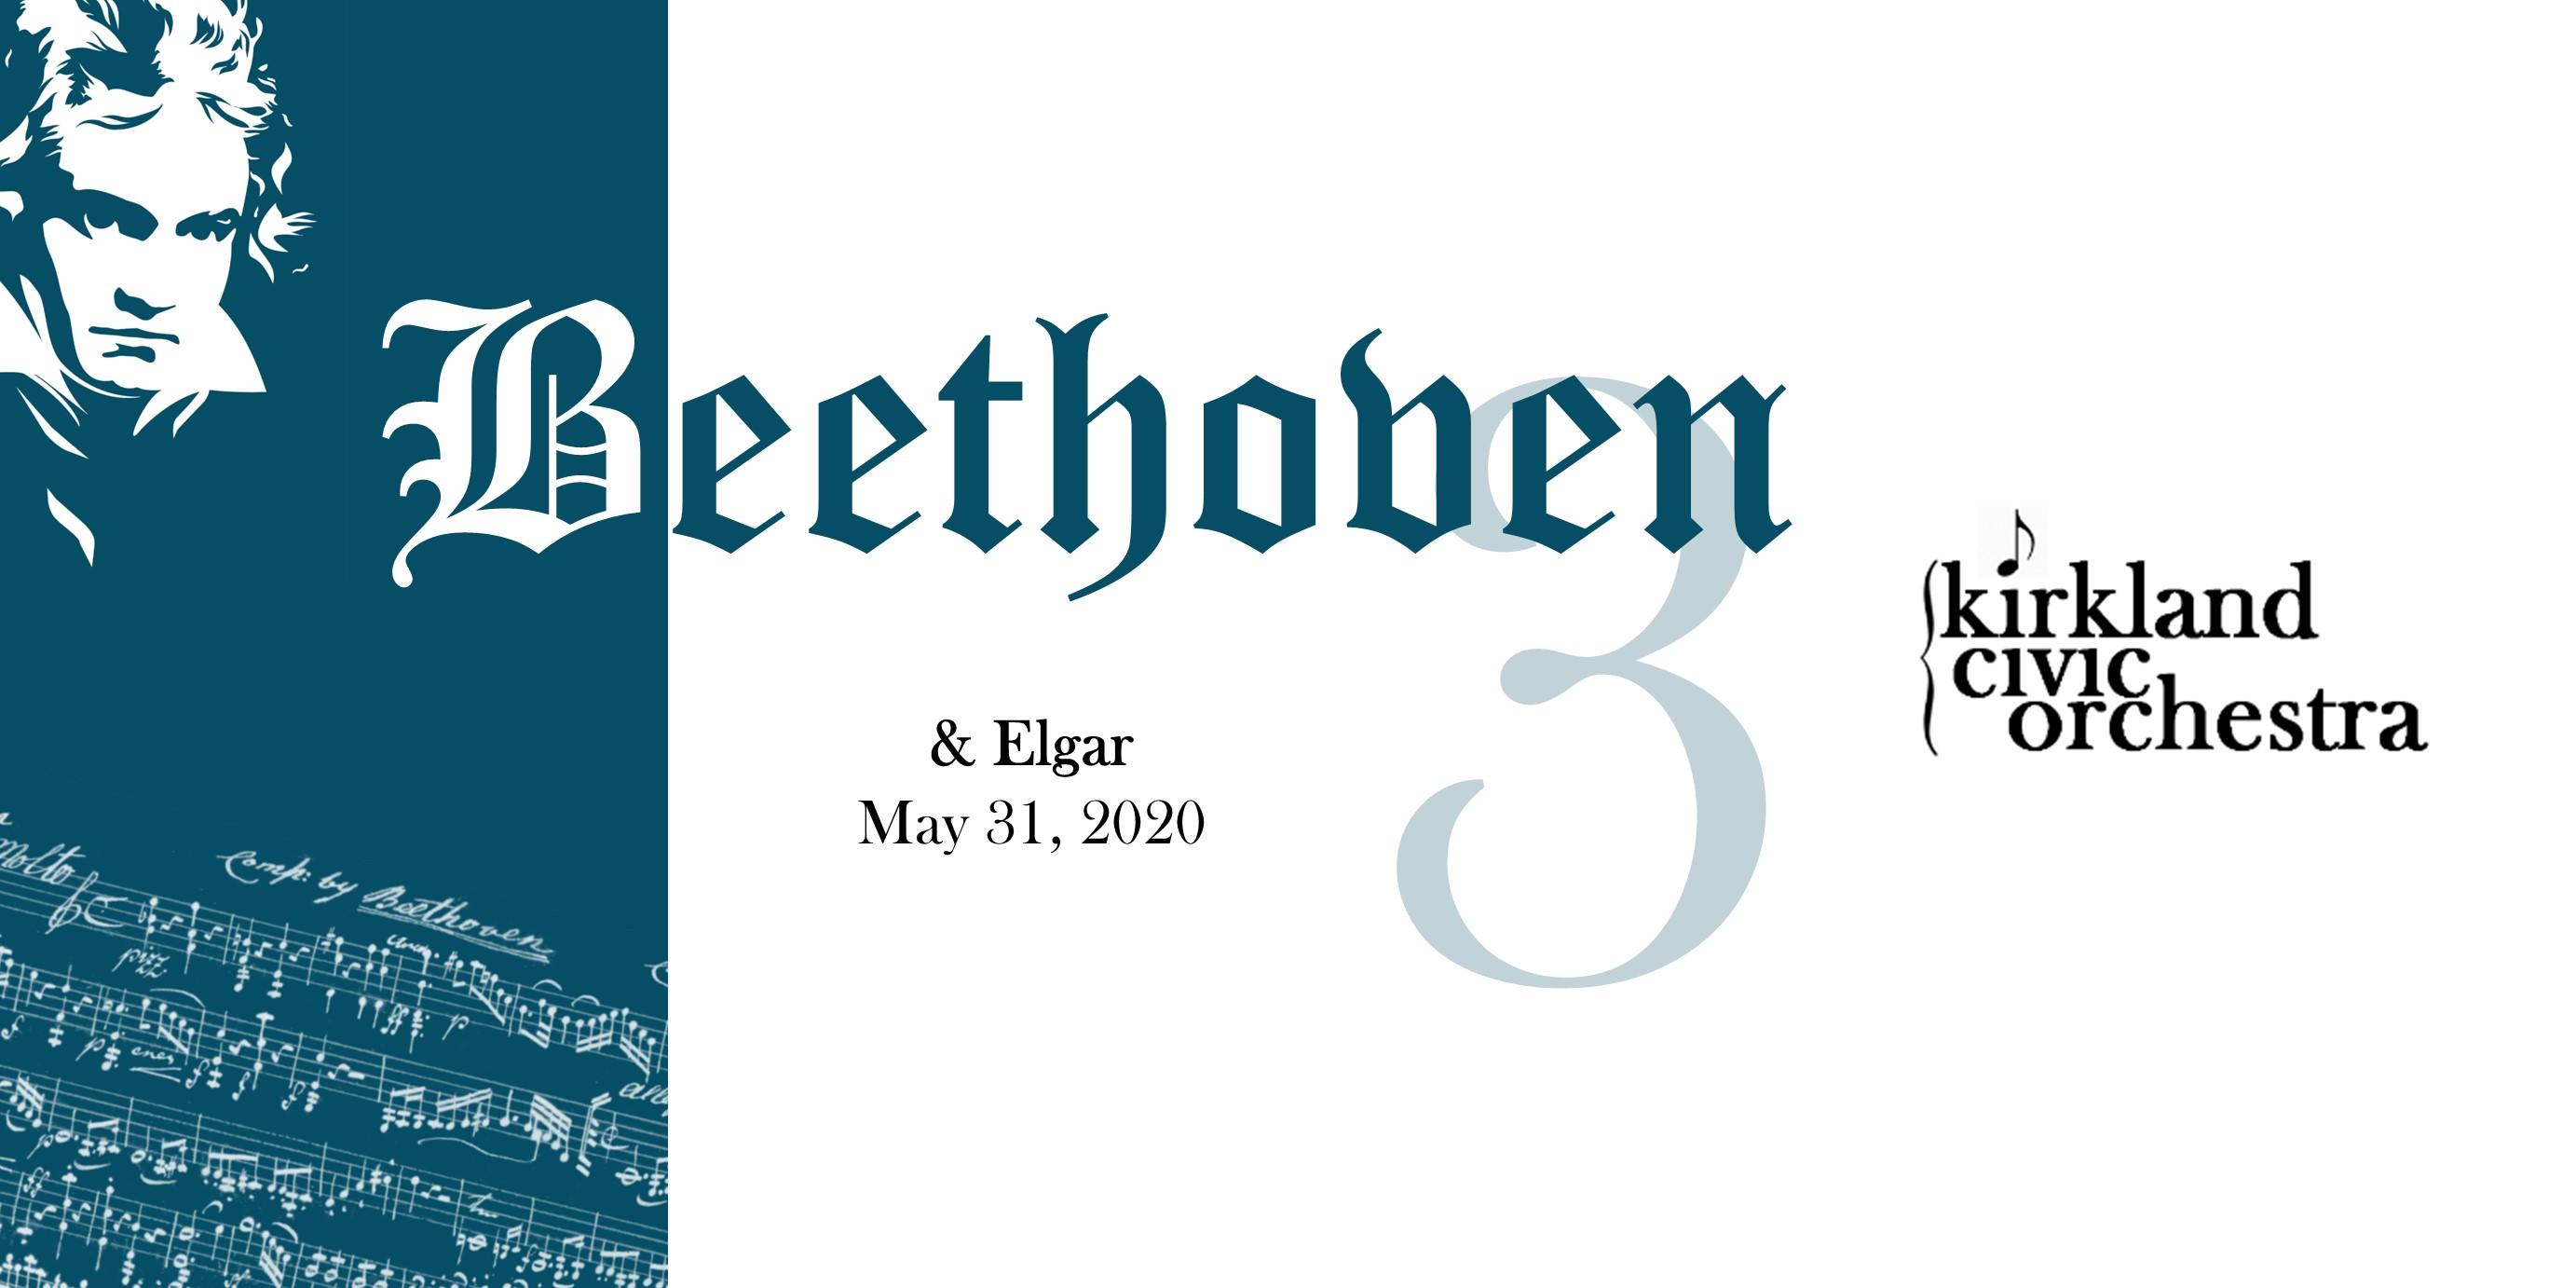 Beethoven & Elgar